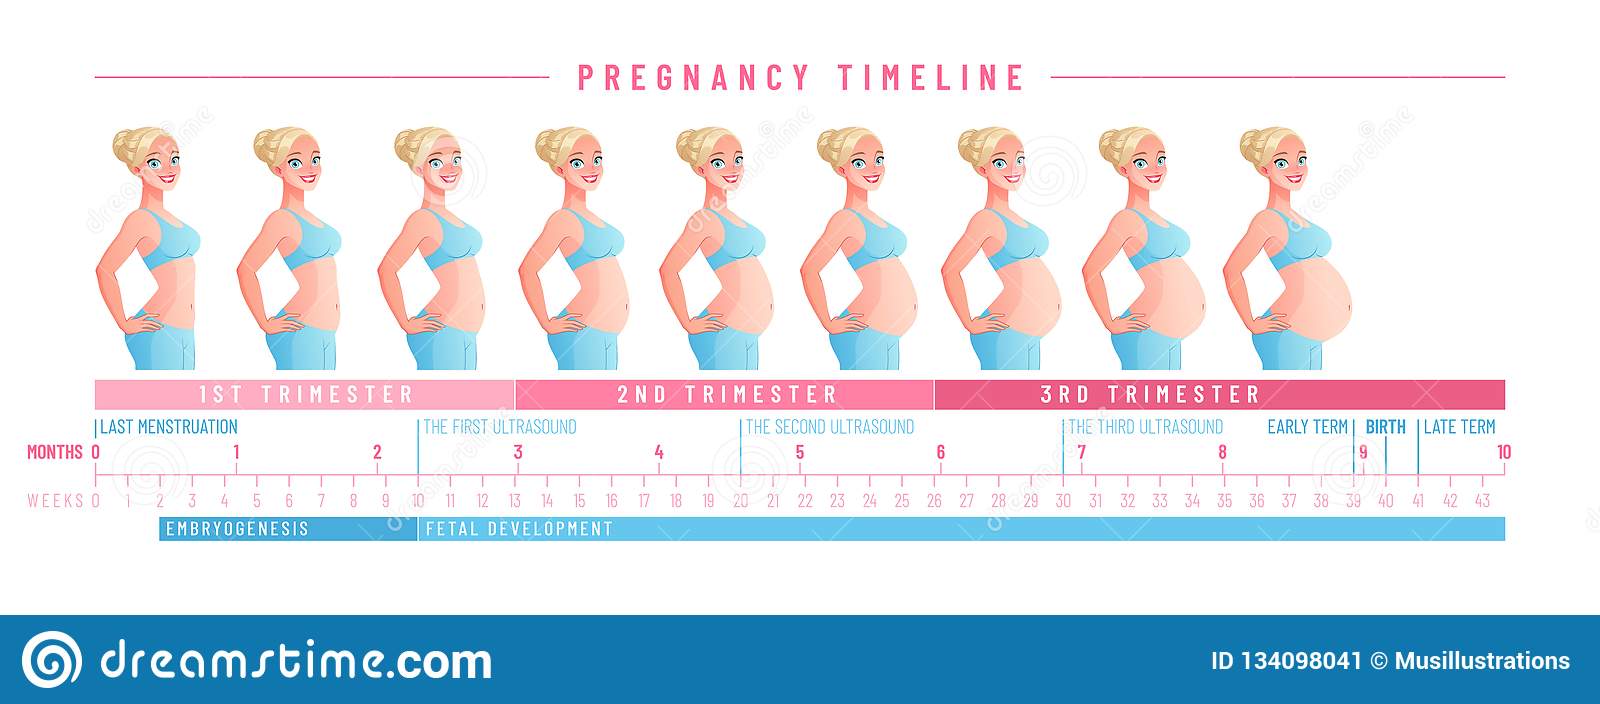 Когда и на каком сроке начинает расти живот при беременности - на какой неделе и месяце у беременных и как растет по неделям и во сколько